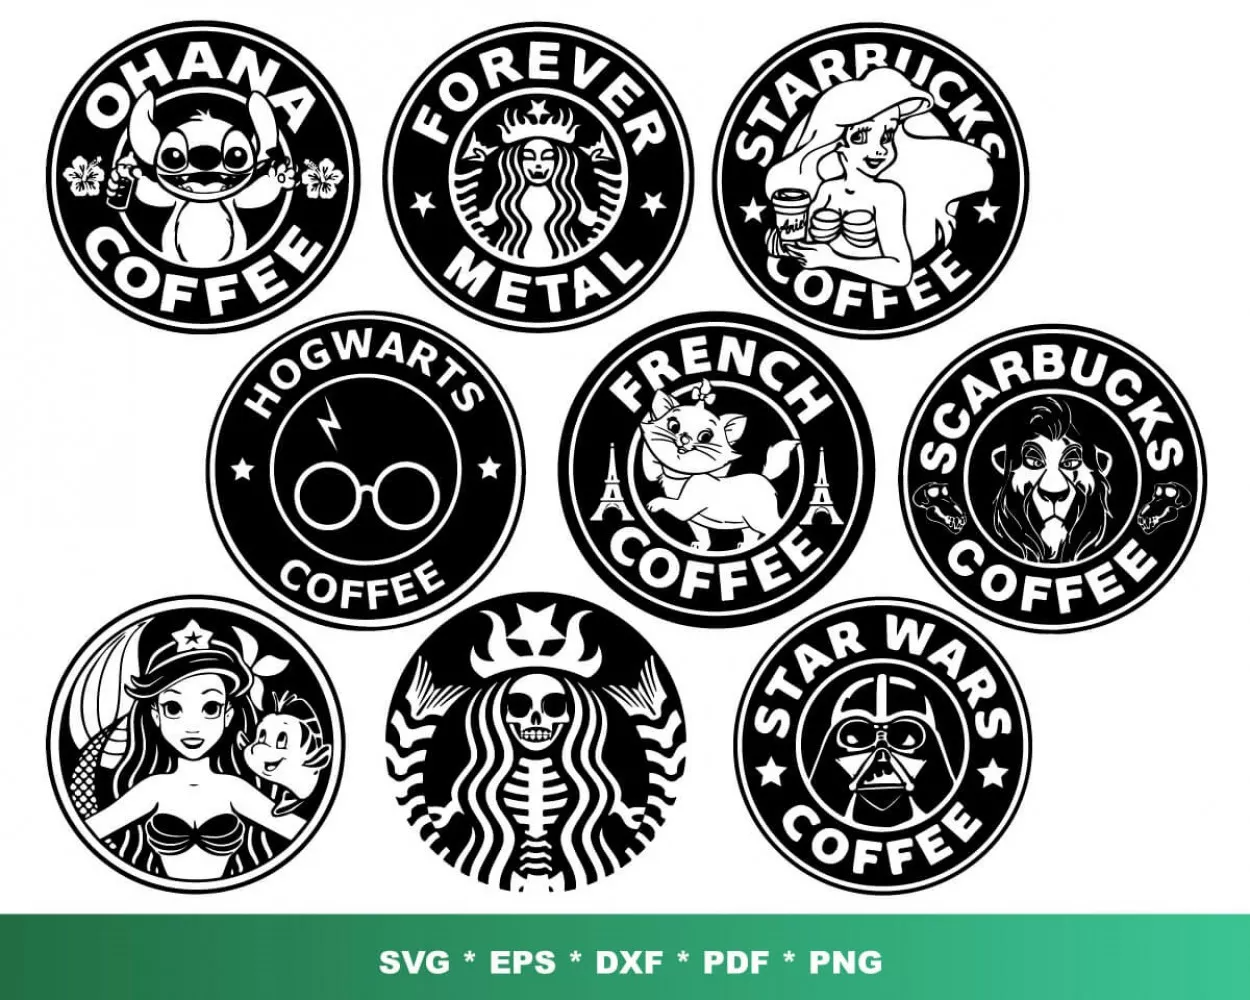 100+ Designs Digital Download LF0QOS60|||||||Funny Starbucks Bundle SVG PNG EPS DXF PDF